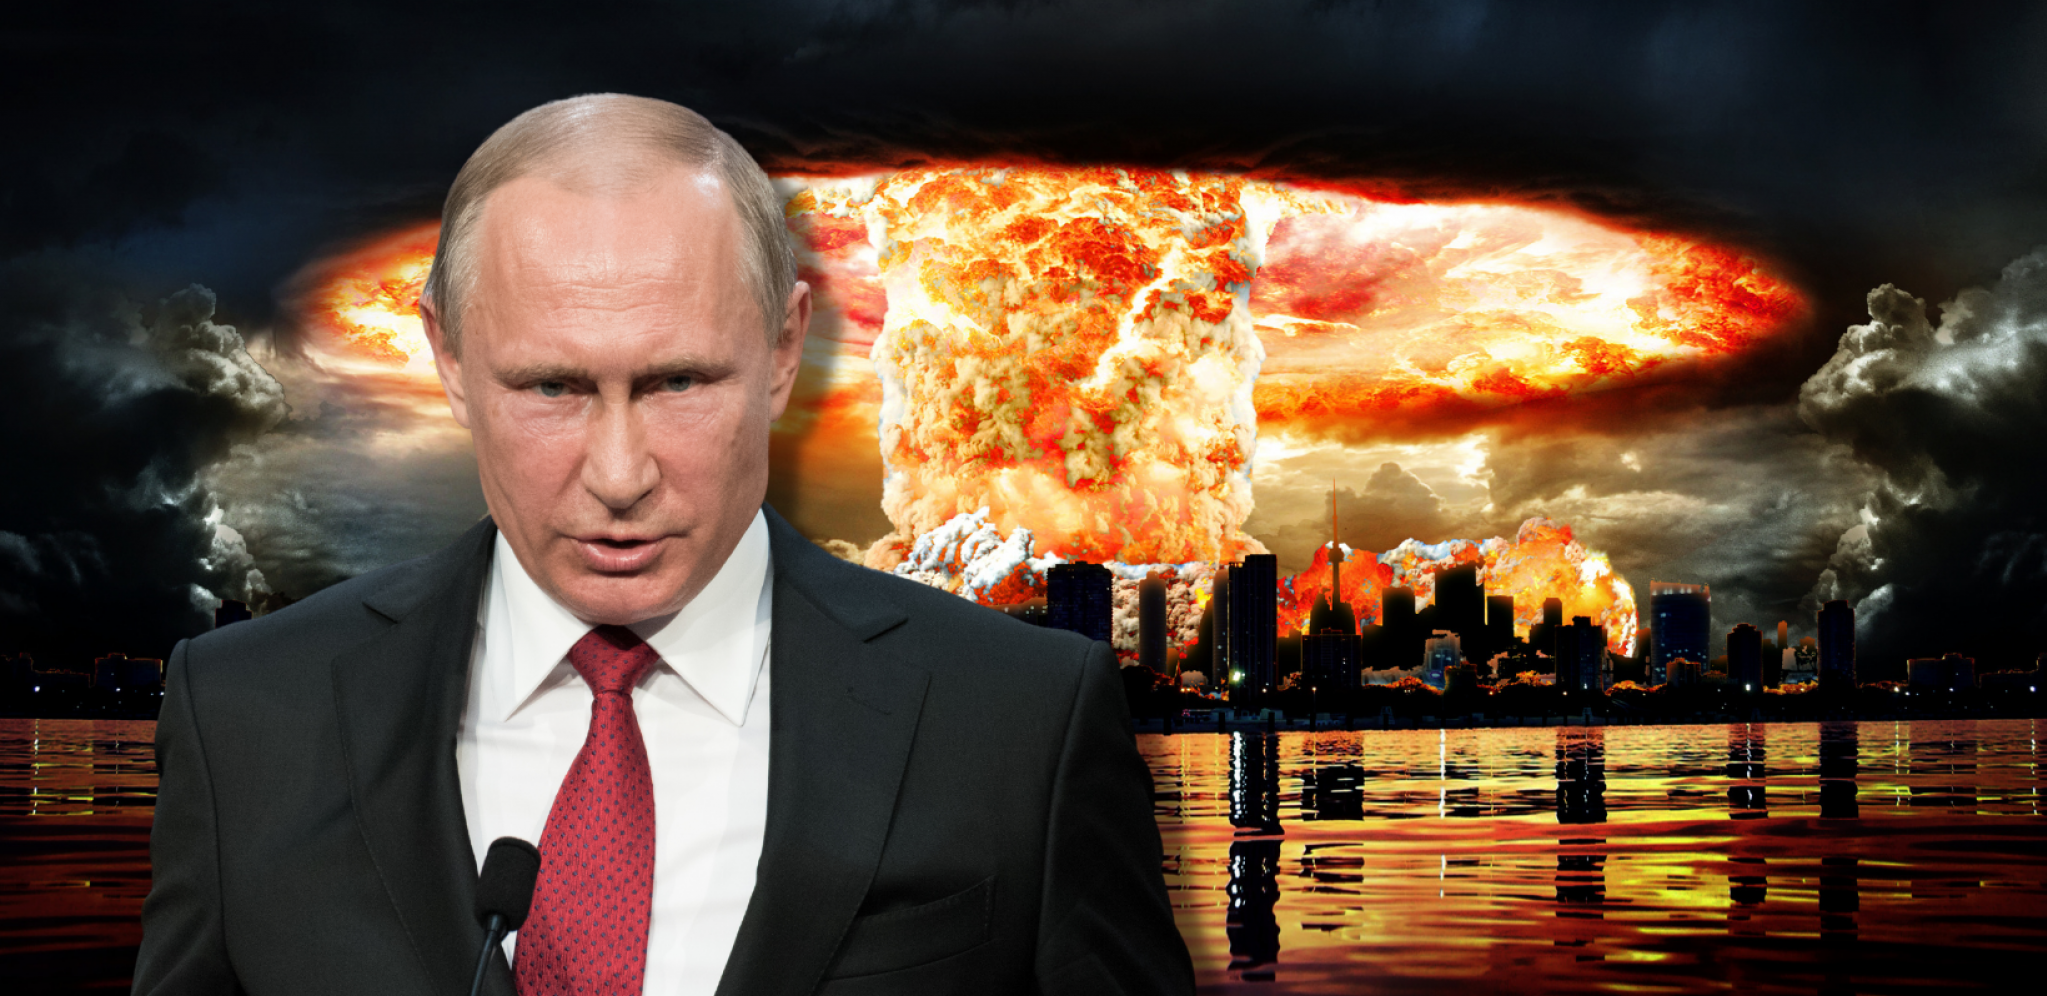 UNIŠTIĆE IH  Ovo je poslednje Putinovo upozorenje zapadu